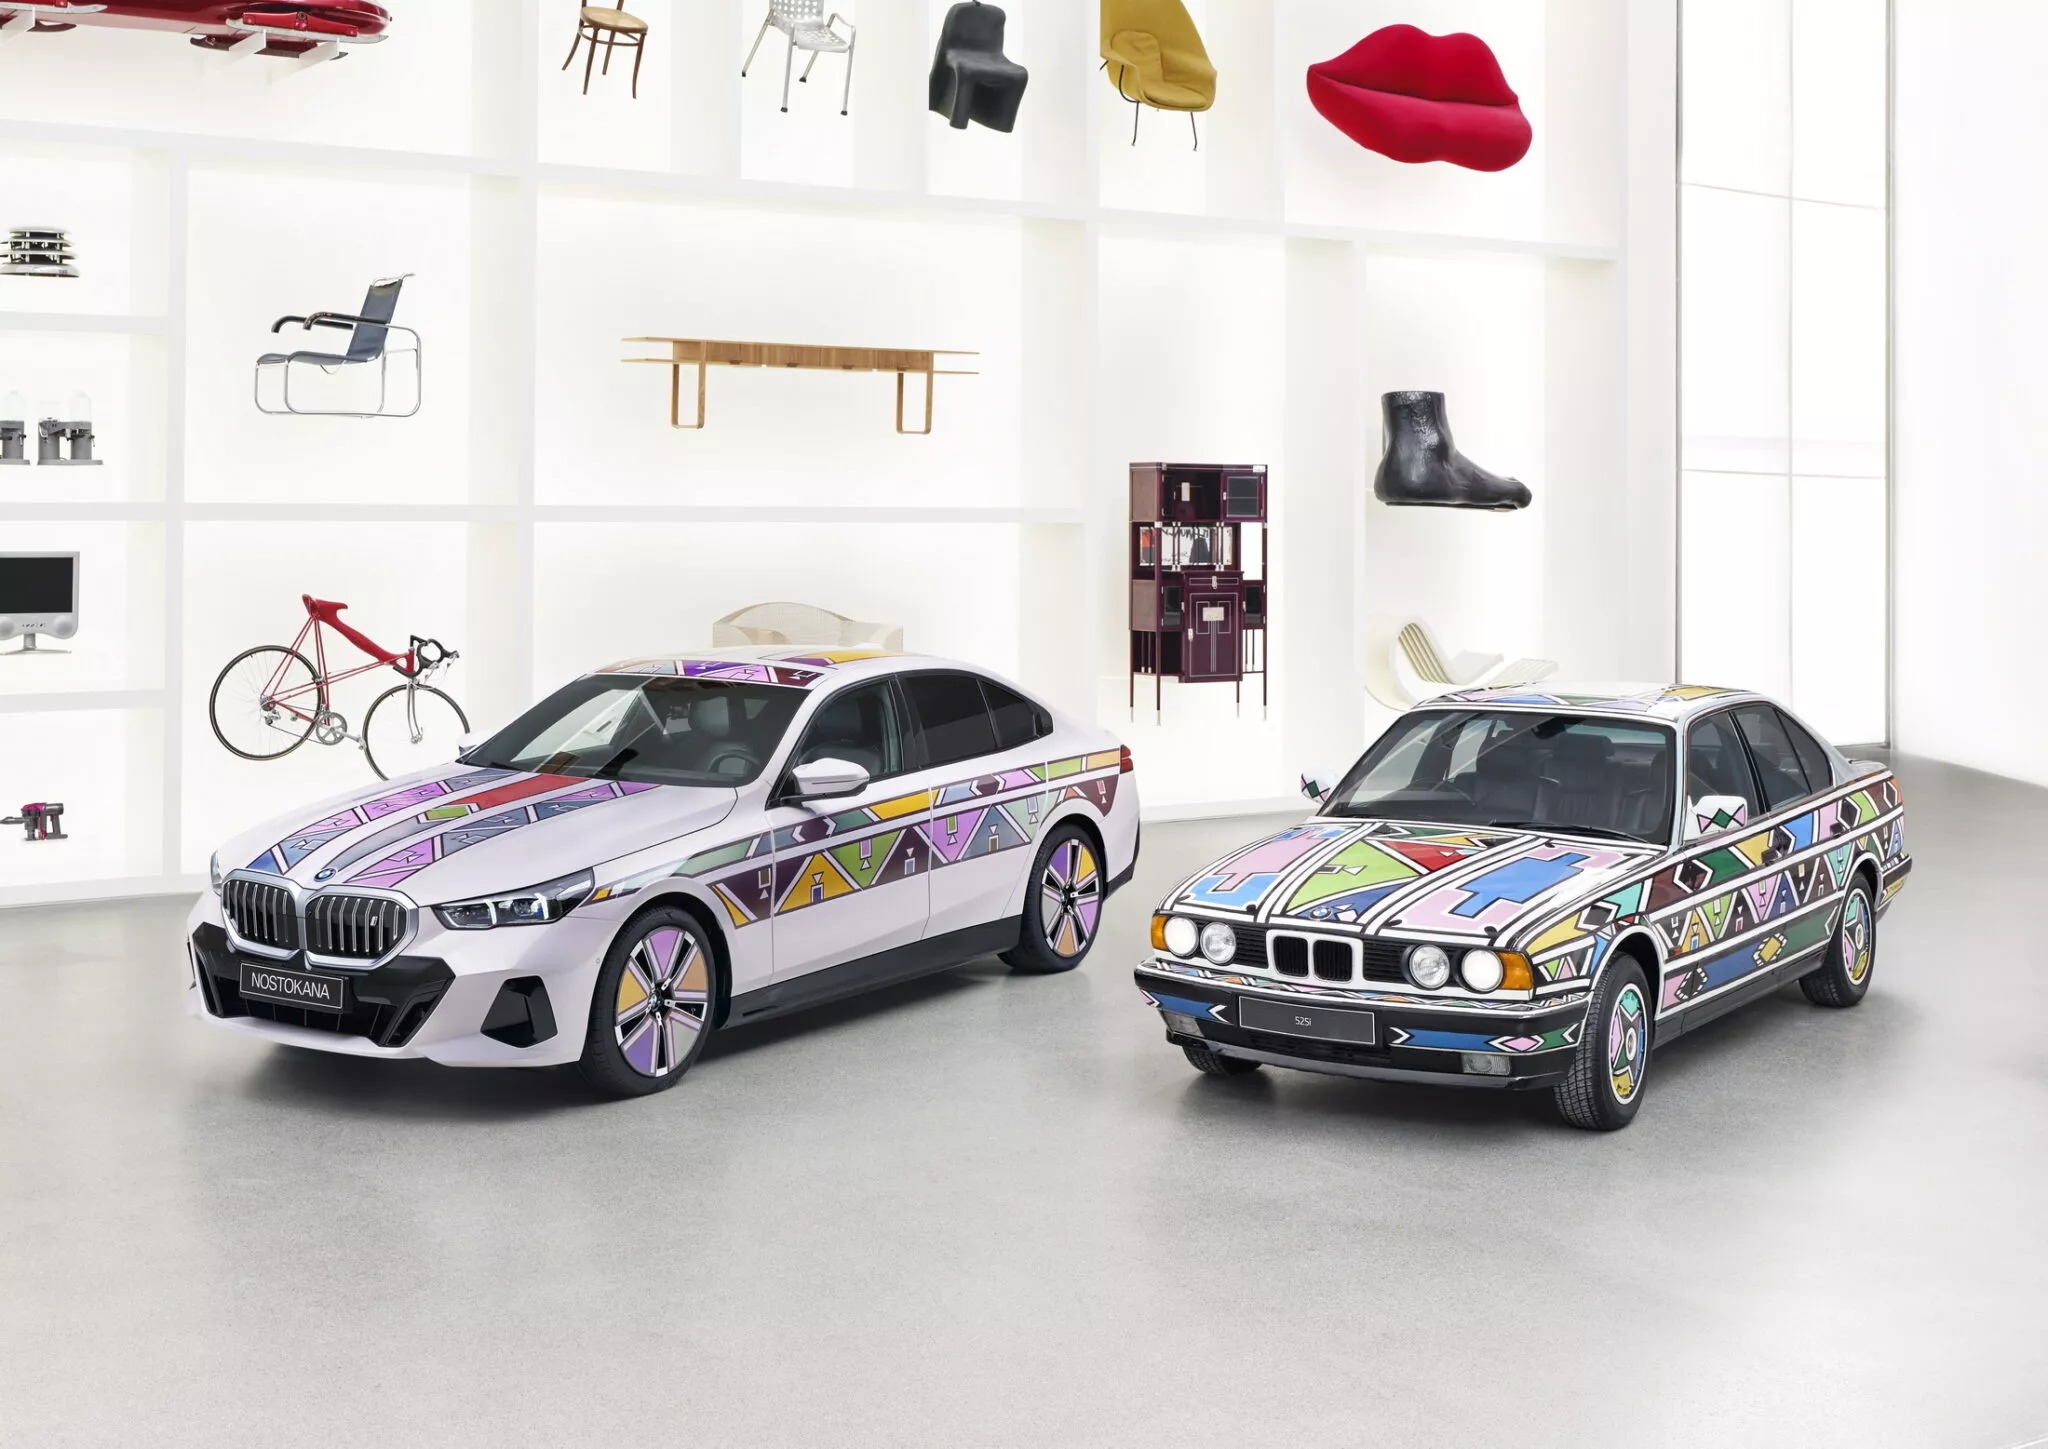 Sơn đổi màu BMW lên tầm cao mới: Hàng triệu hạt sơn di chuyển trên 4 dải màu khi dòng điện chạy qua - ảnh 3